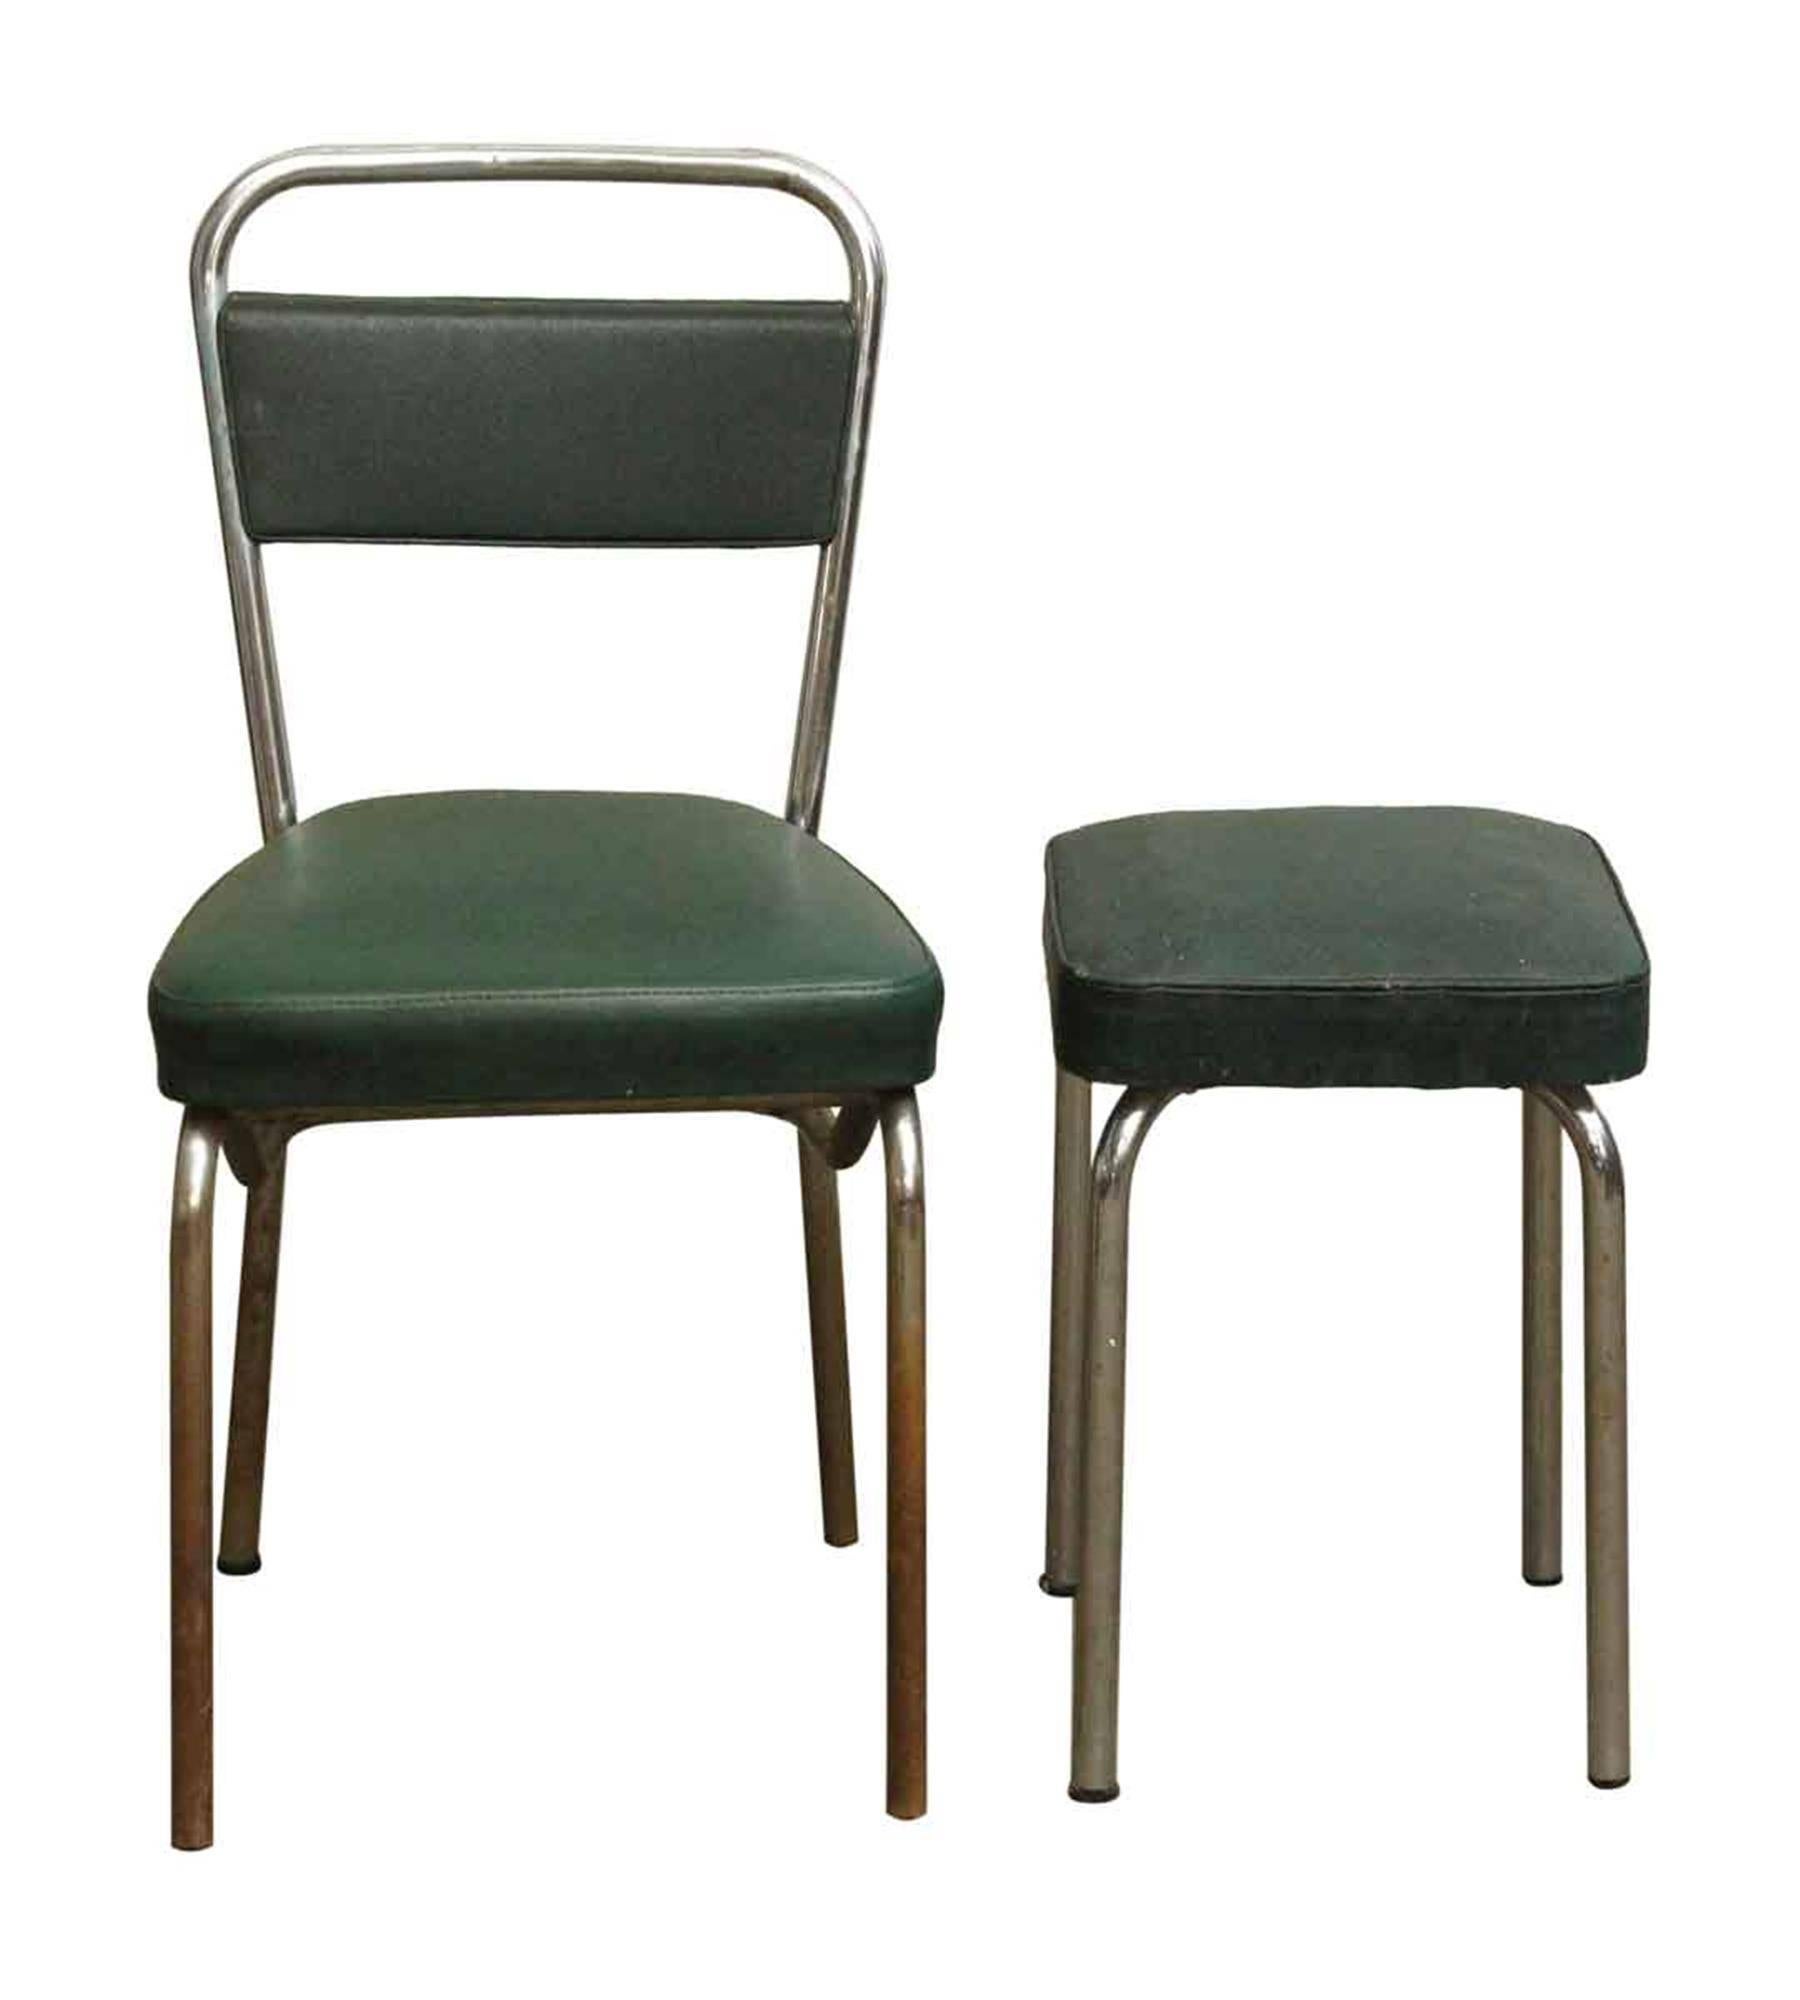 Dunkelgrüne Stühle von Strafor aus den 1970er Jahren mit passenden grünen Hockern und einem verchromten Gestell. Weist einige Gebrauchsspuren auf. Preis für ein vierteiliges Set. Bitte beachten Sie, dass sich dieser Artikel in unserer Niederlassung